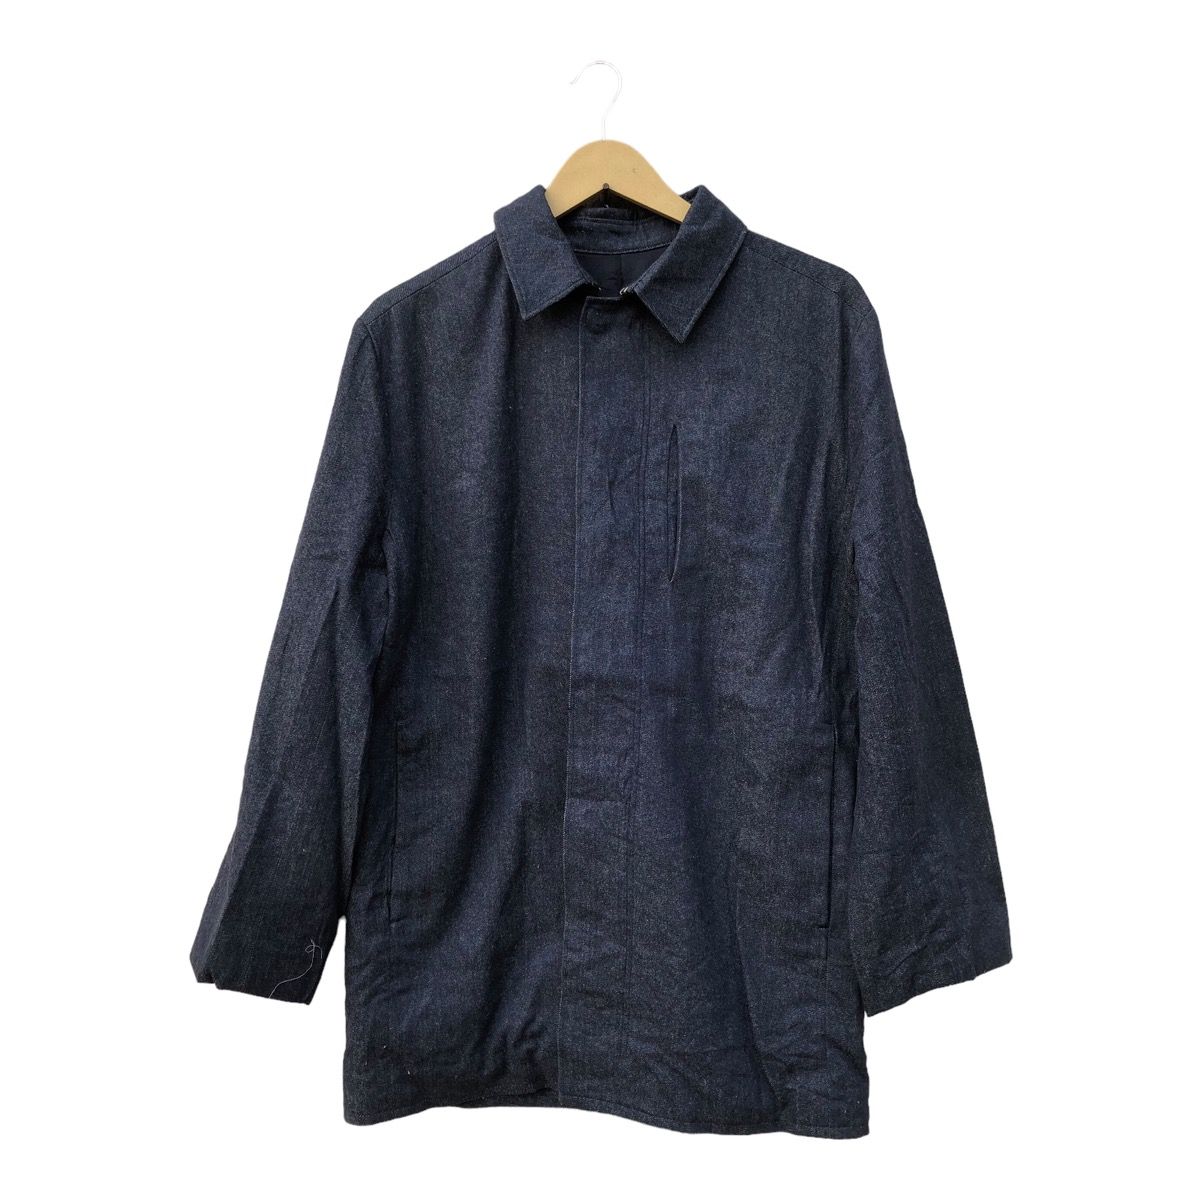 Japanese Brand SO Alexander Van Slobbe Overcoat Denim Jacket | Grailed